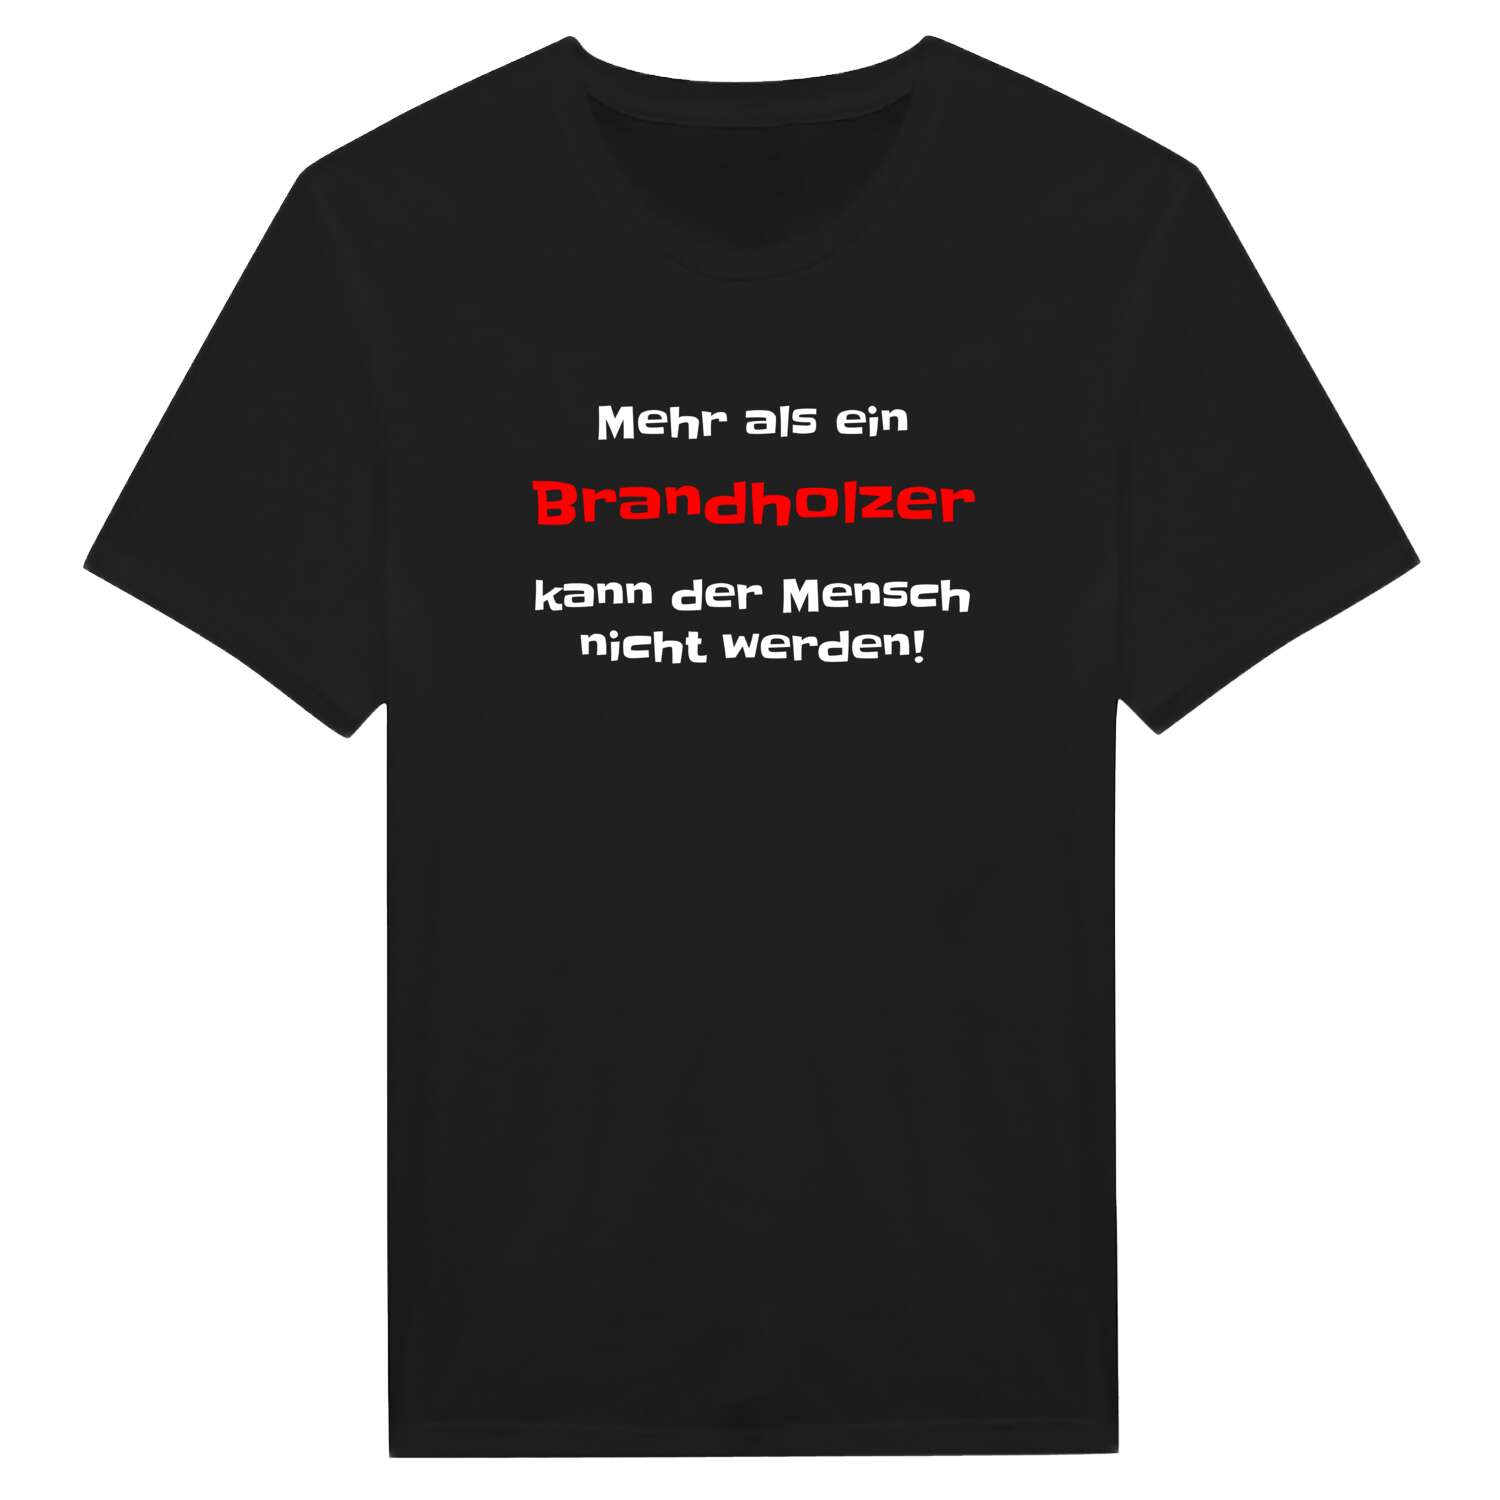 Brandholz T-Shirt »Mehr als ein«